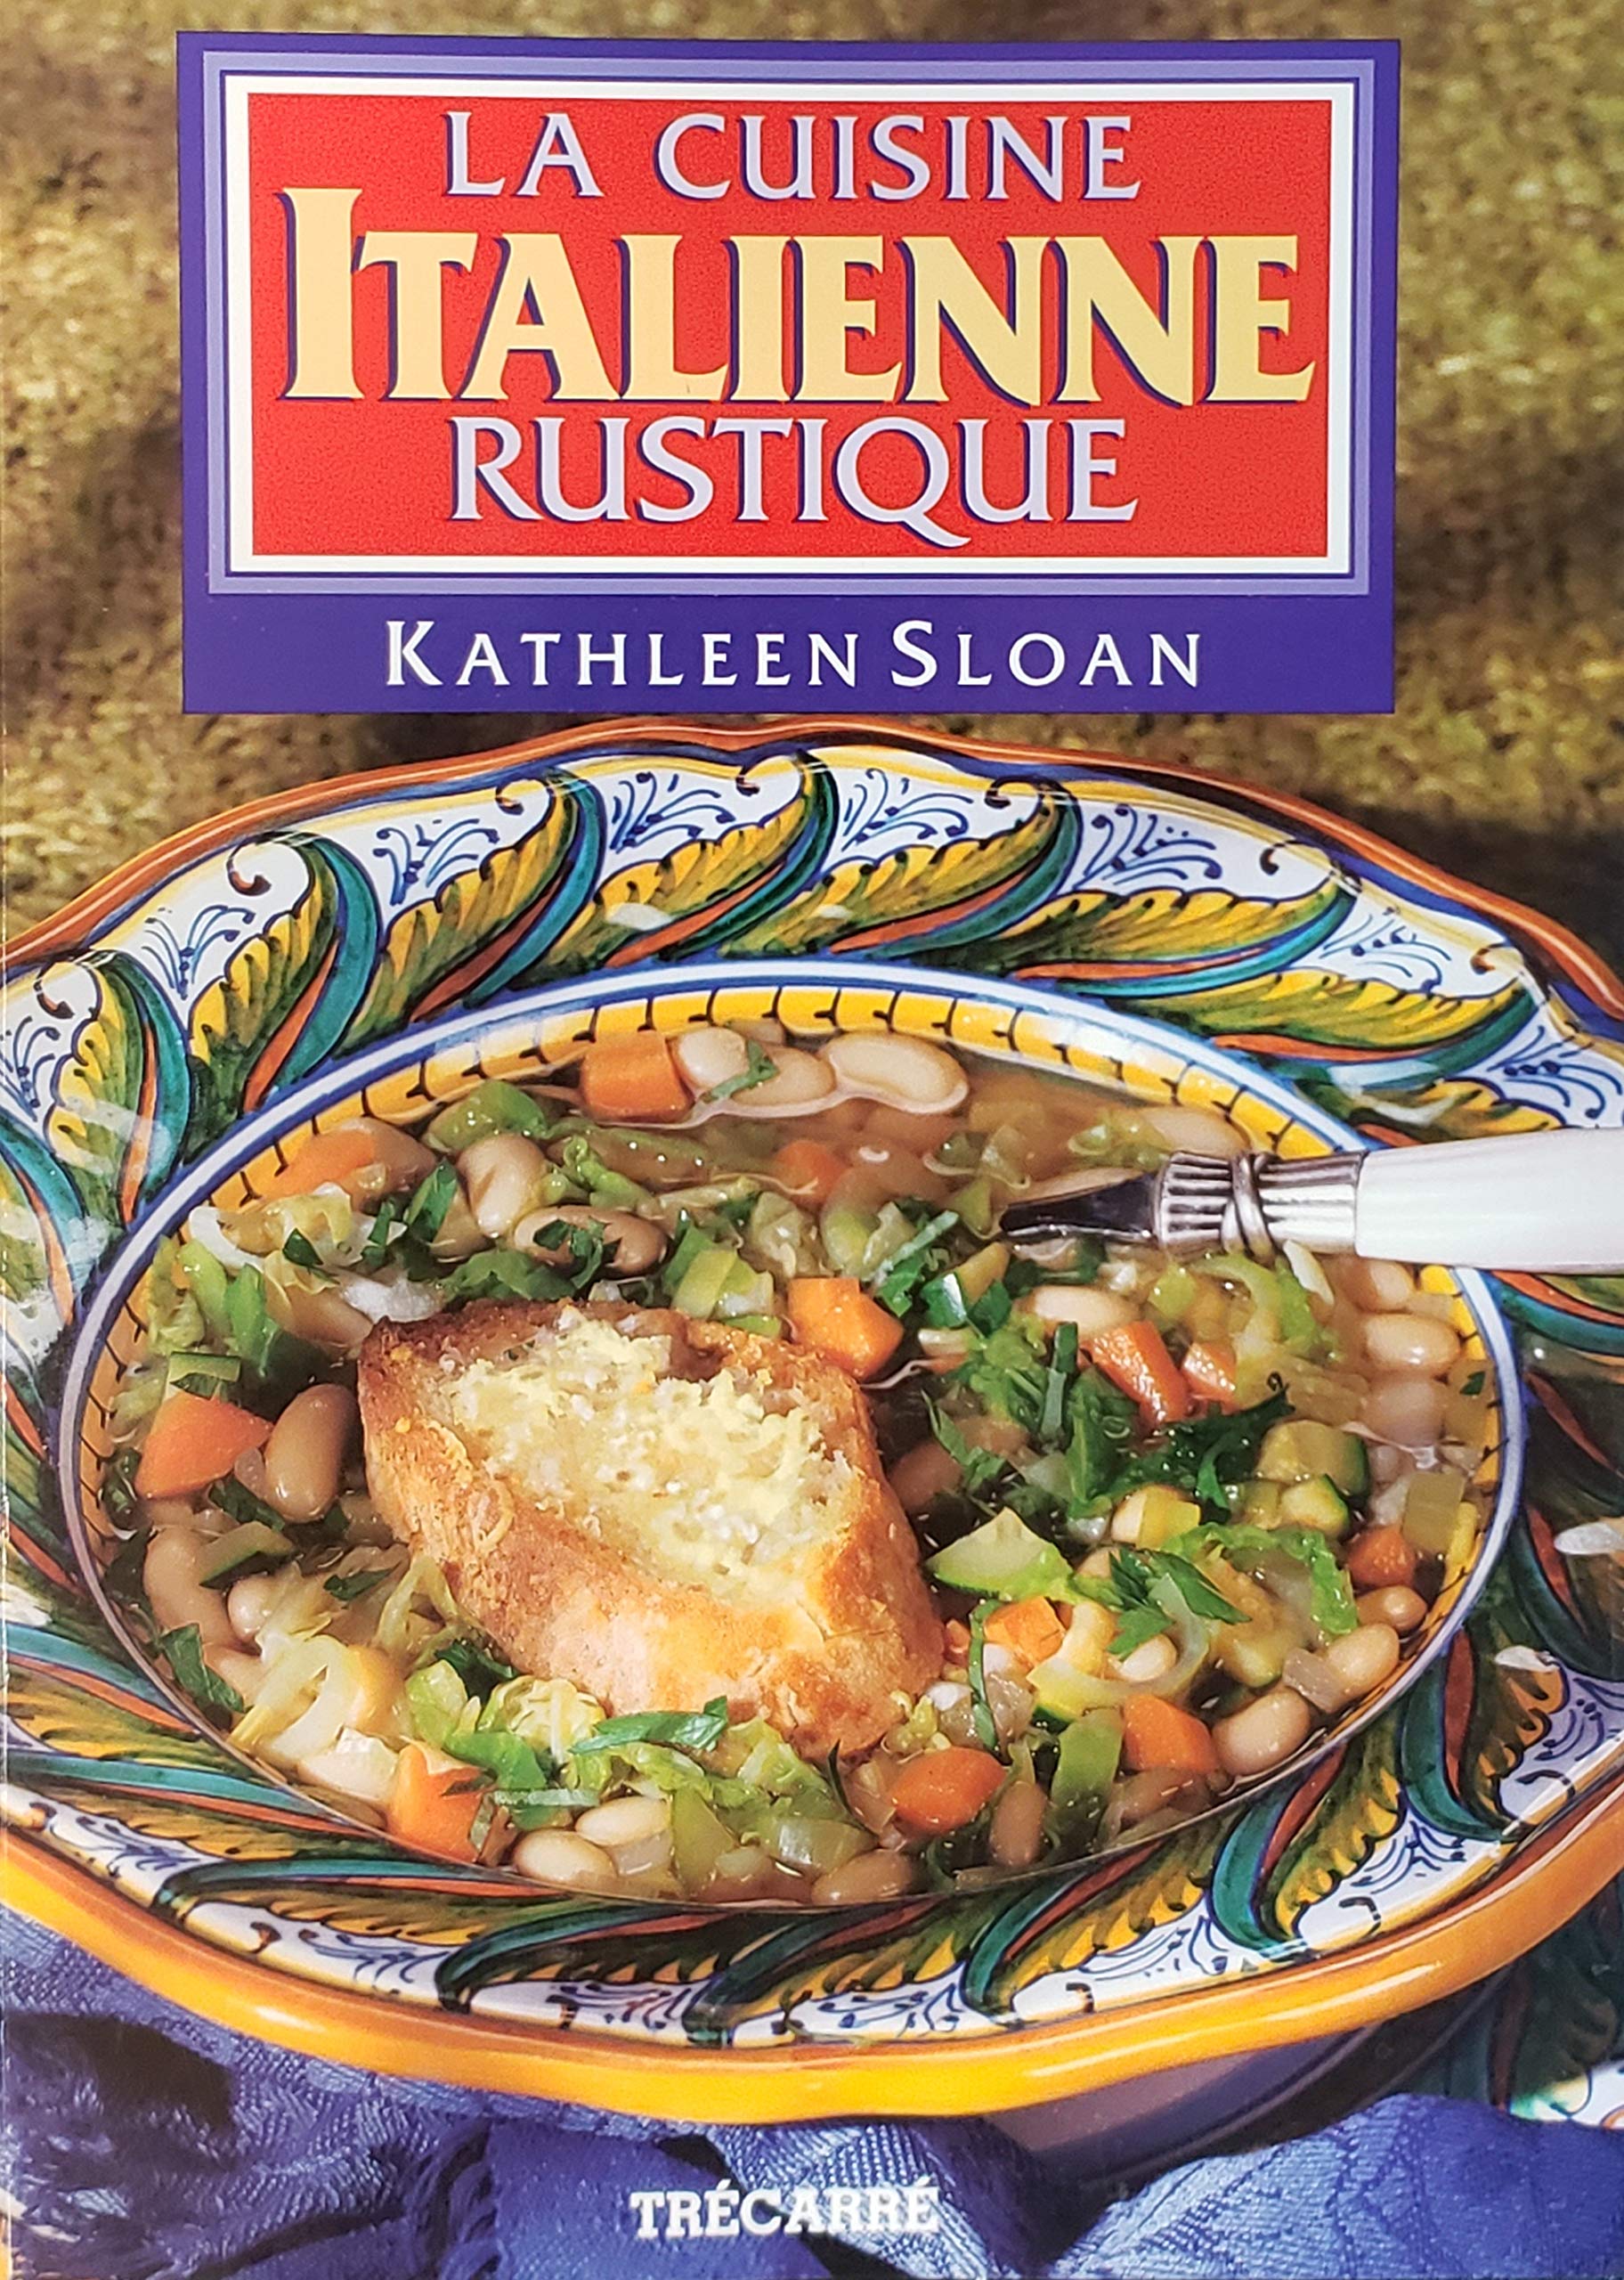 Livre ISBN 289249821X La cuisine italienne rustique (Kathleen Sloan)